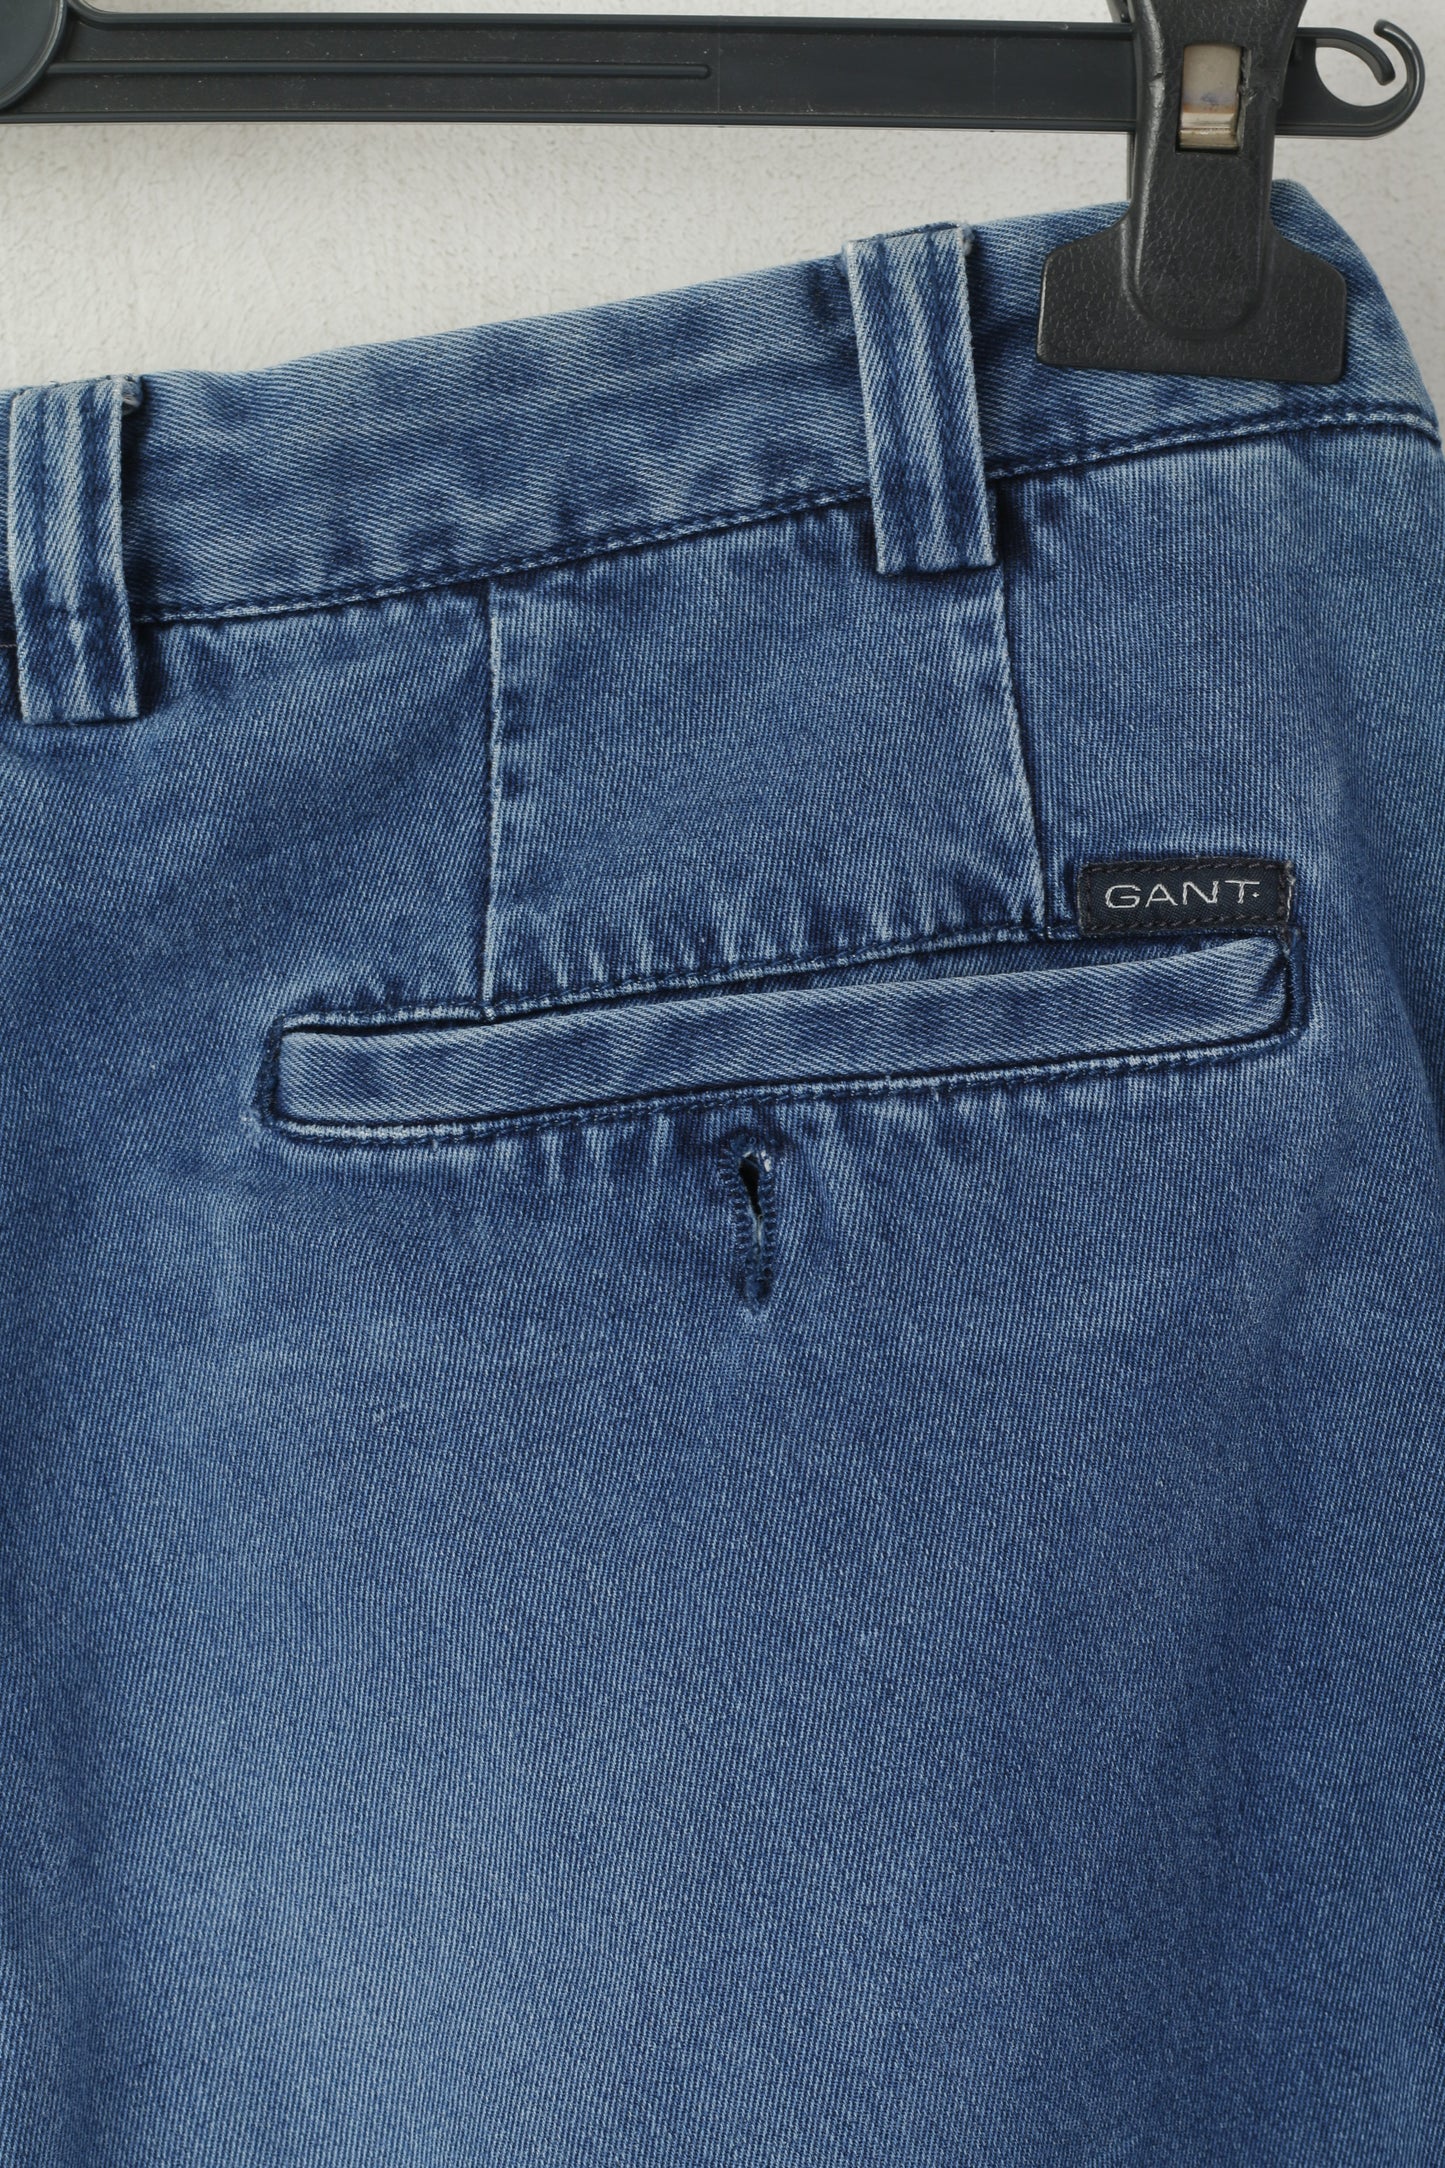 Gant Men 36 52 Jeans Trousers Navy Cotton Straight Leg Classic Soft Pants